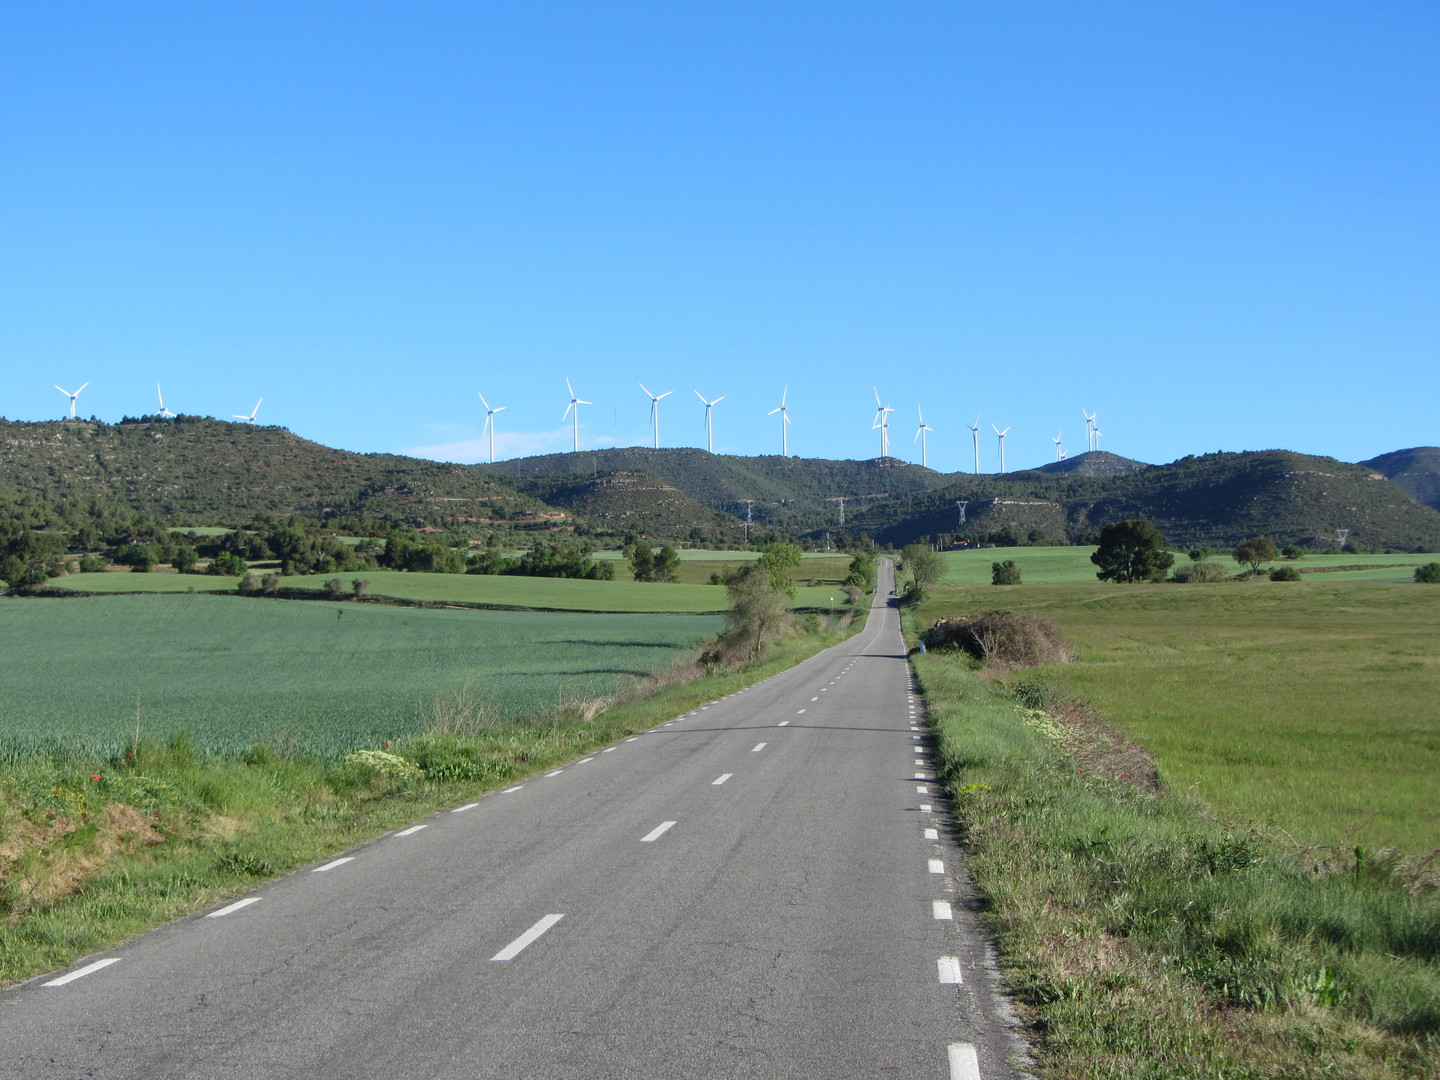 Von Igualada: Stramm auf die Serra zu. Der im Text erwähnte Còpia de Palomes ist die erste Kuppe von rechts, auf bzw. hinter der Windkraftanlagen stehen.